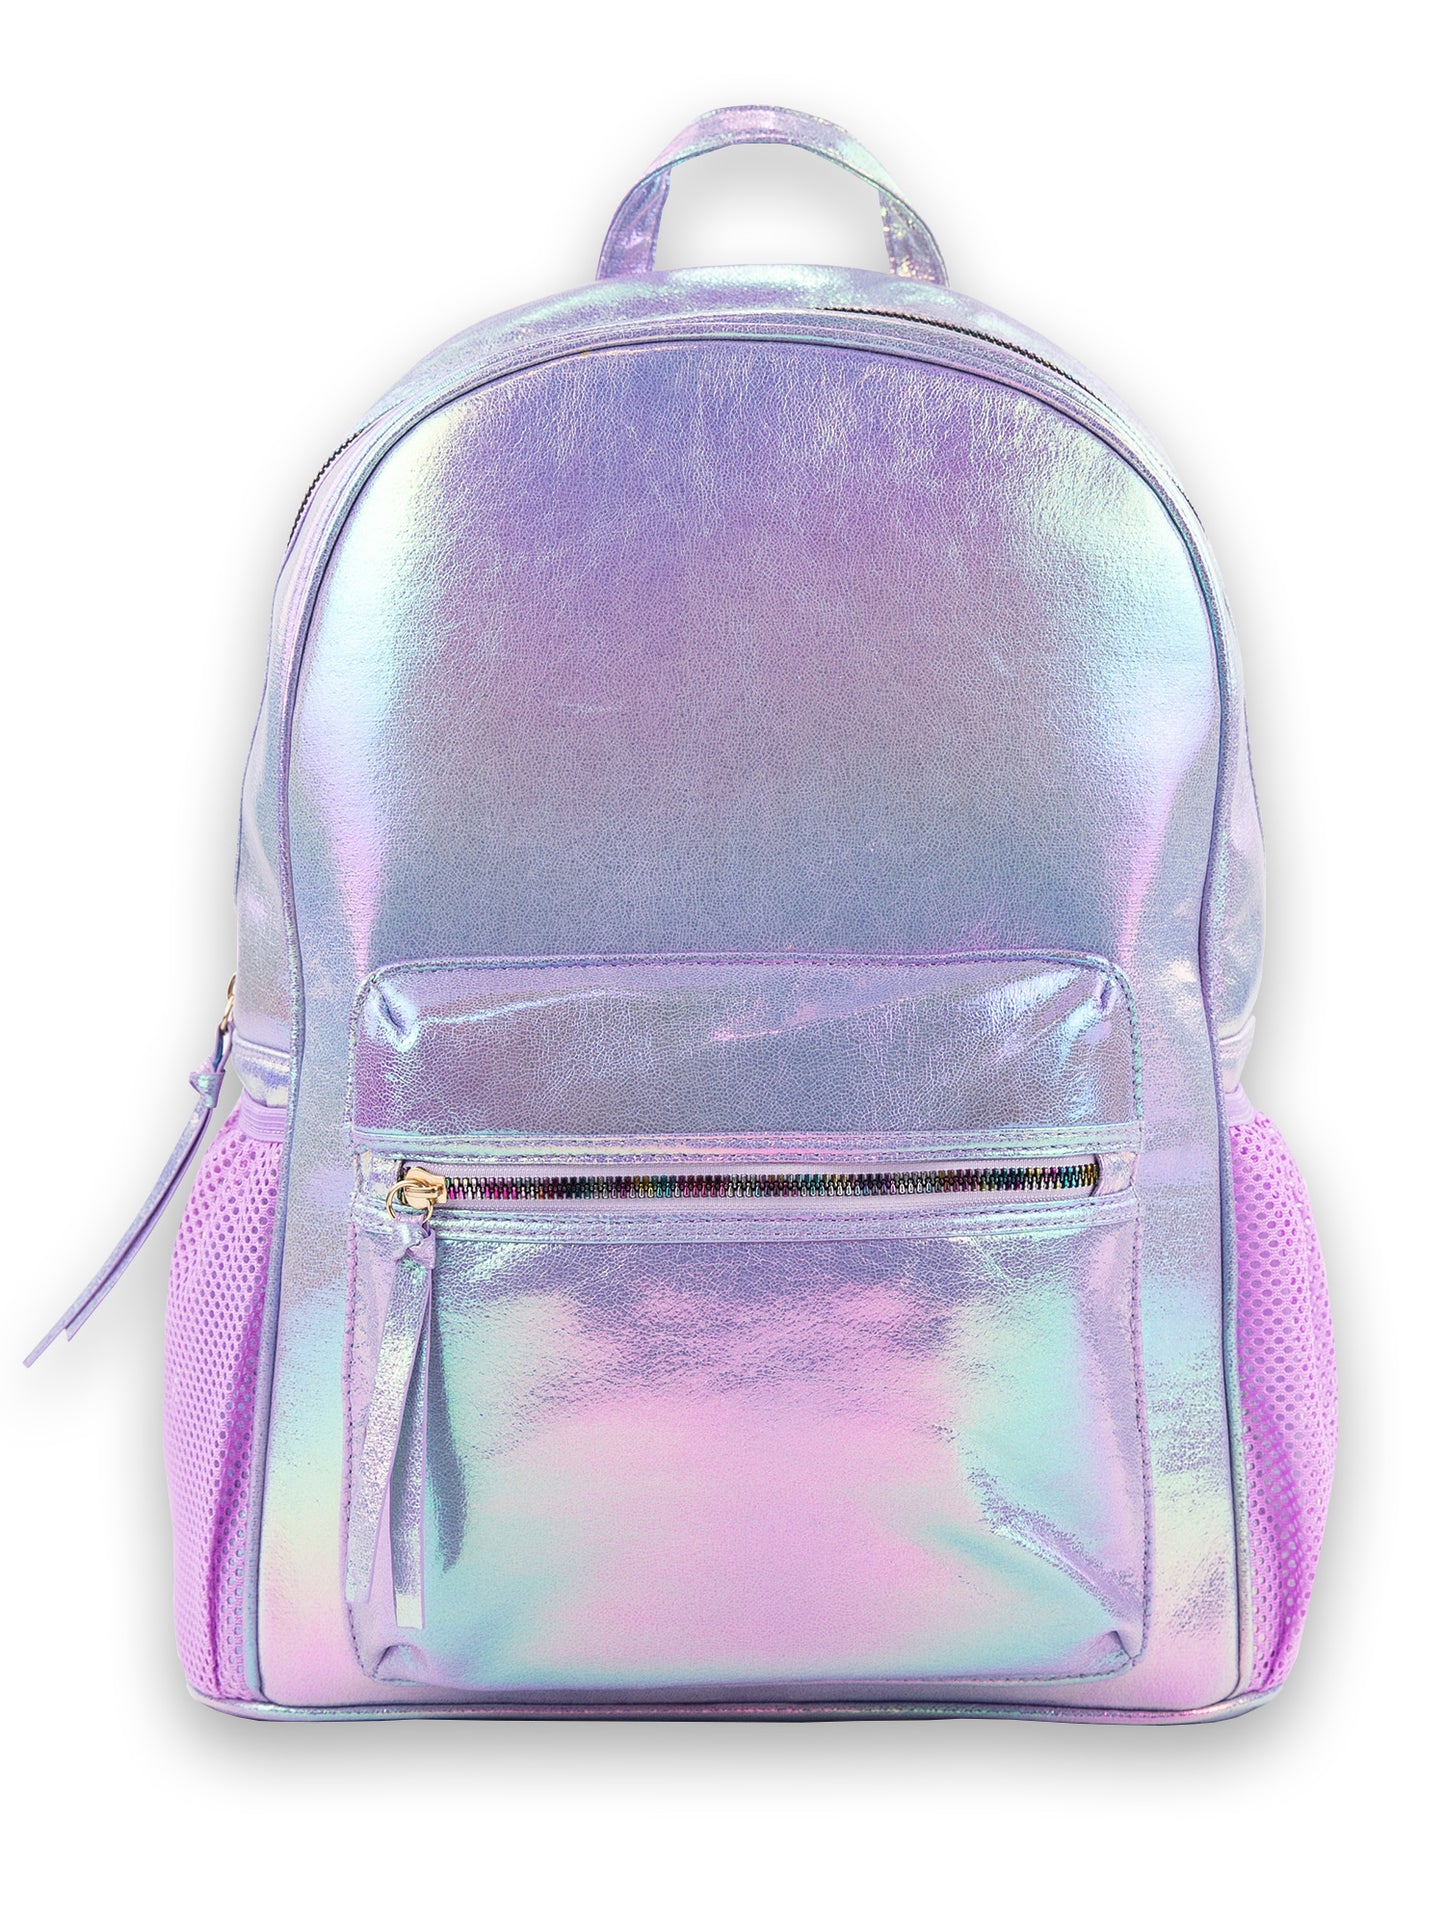 Under One Sky MultiColor Mini Girls Backpack Unicorn Style EUC